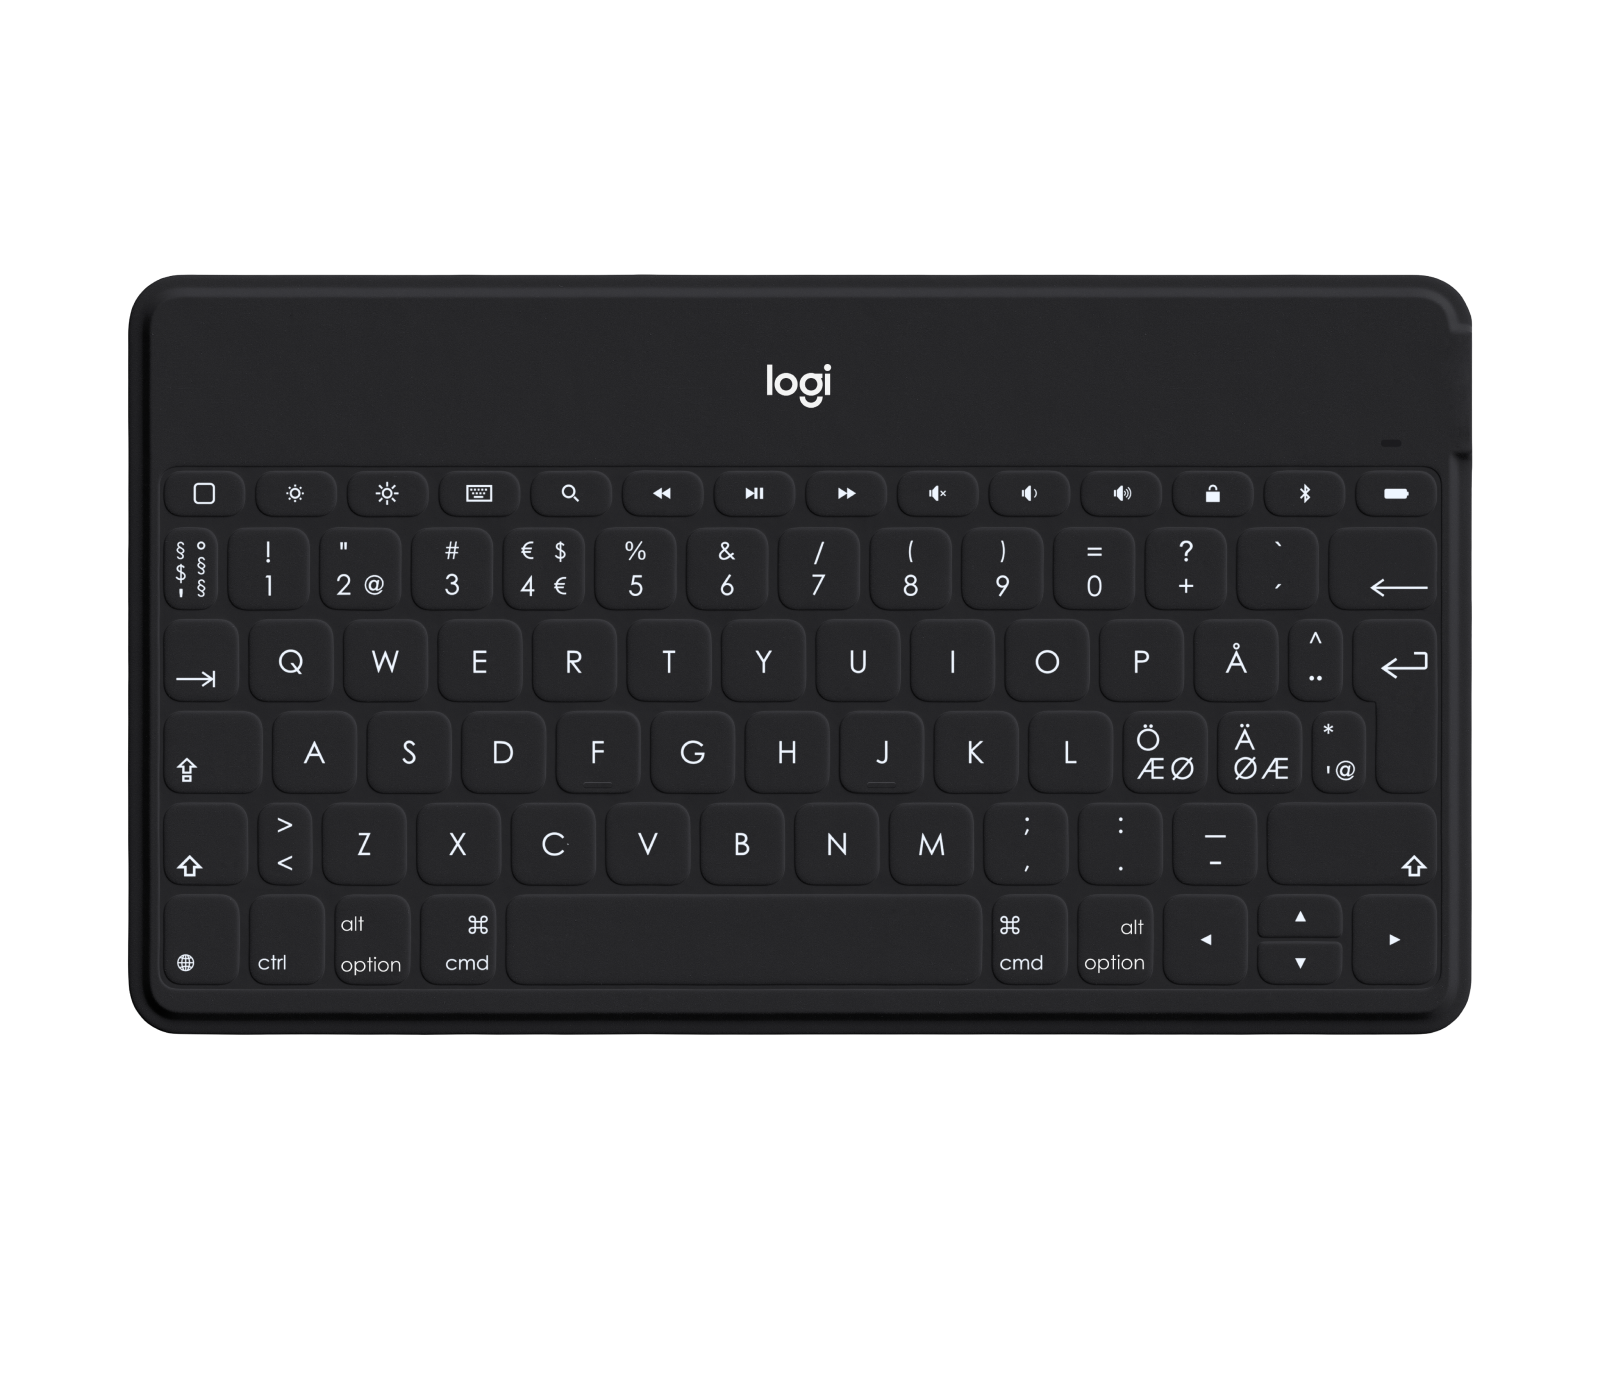 Bluetooth Tastatur QWERTZ Deutsche Tragbare Kabellose Tastatur,Bluetooth 3.0 Kabellose Tastatur für iPad Samsung iOS Android Windows 